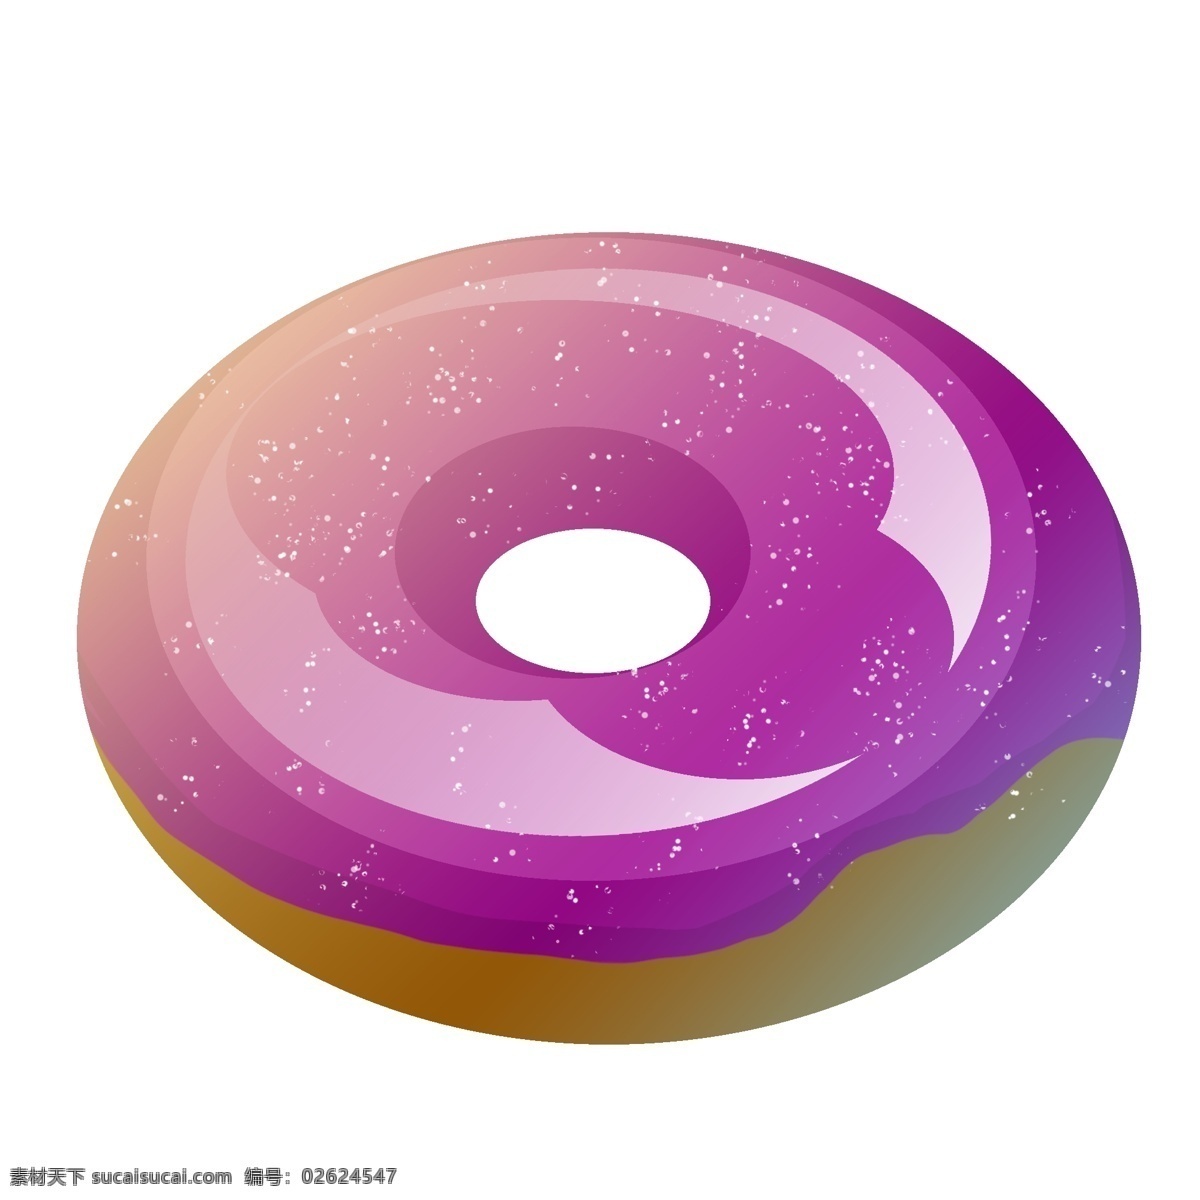 夏日 紫色 甜甜 圈 夏季 美食 甜食